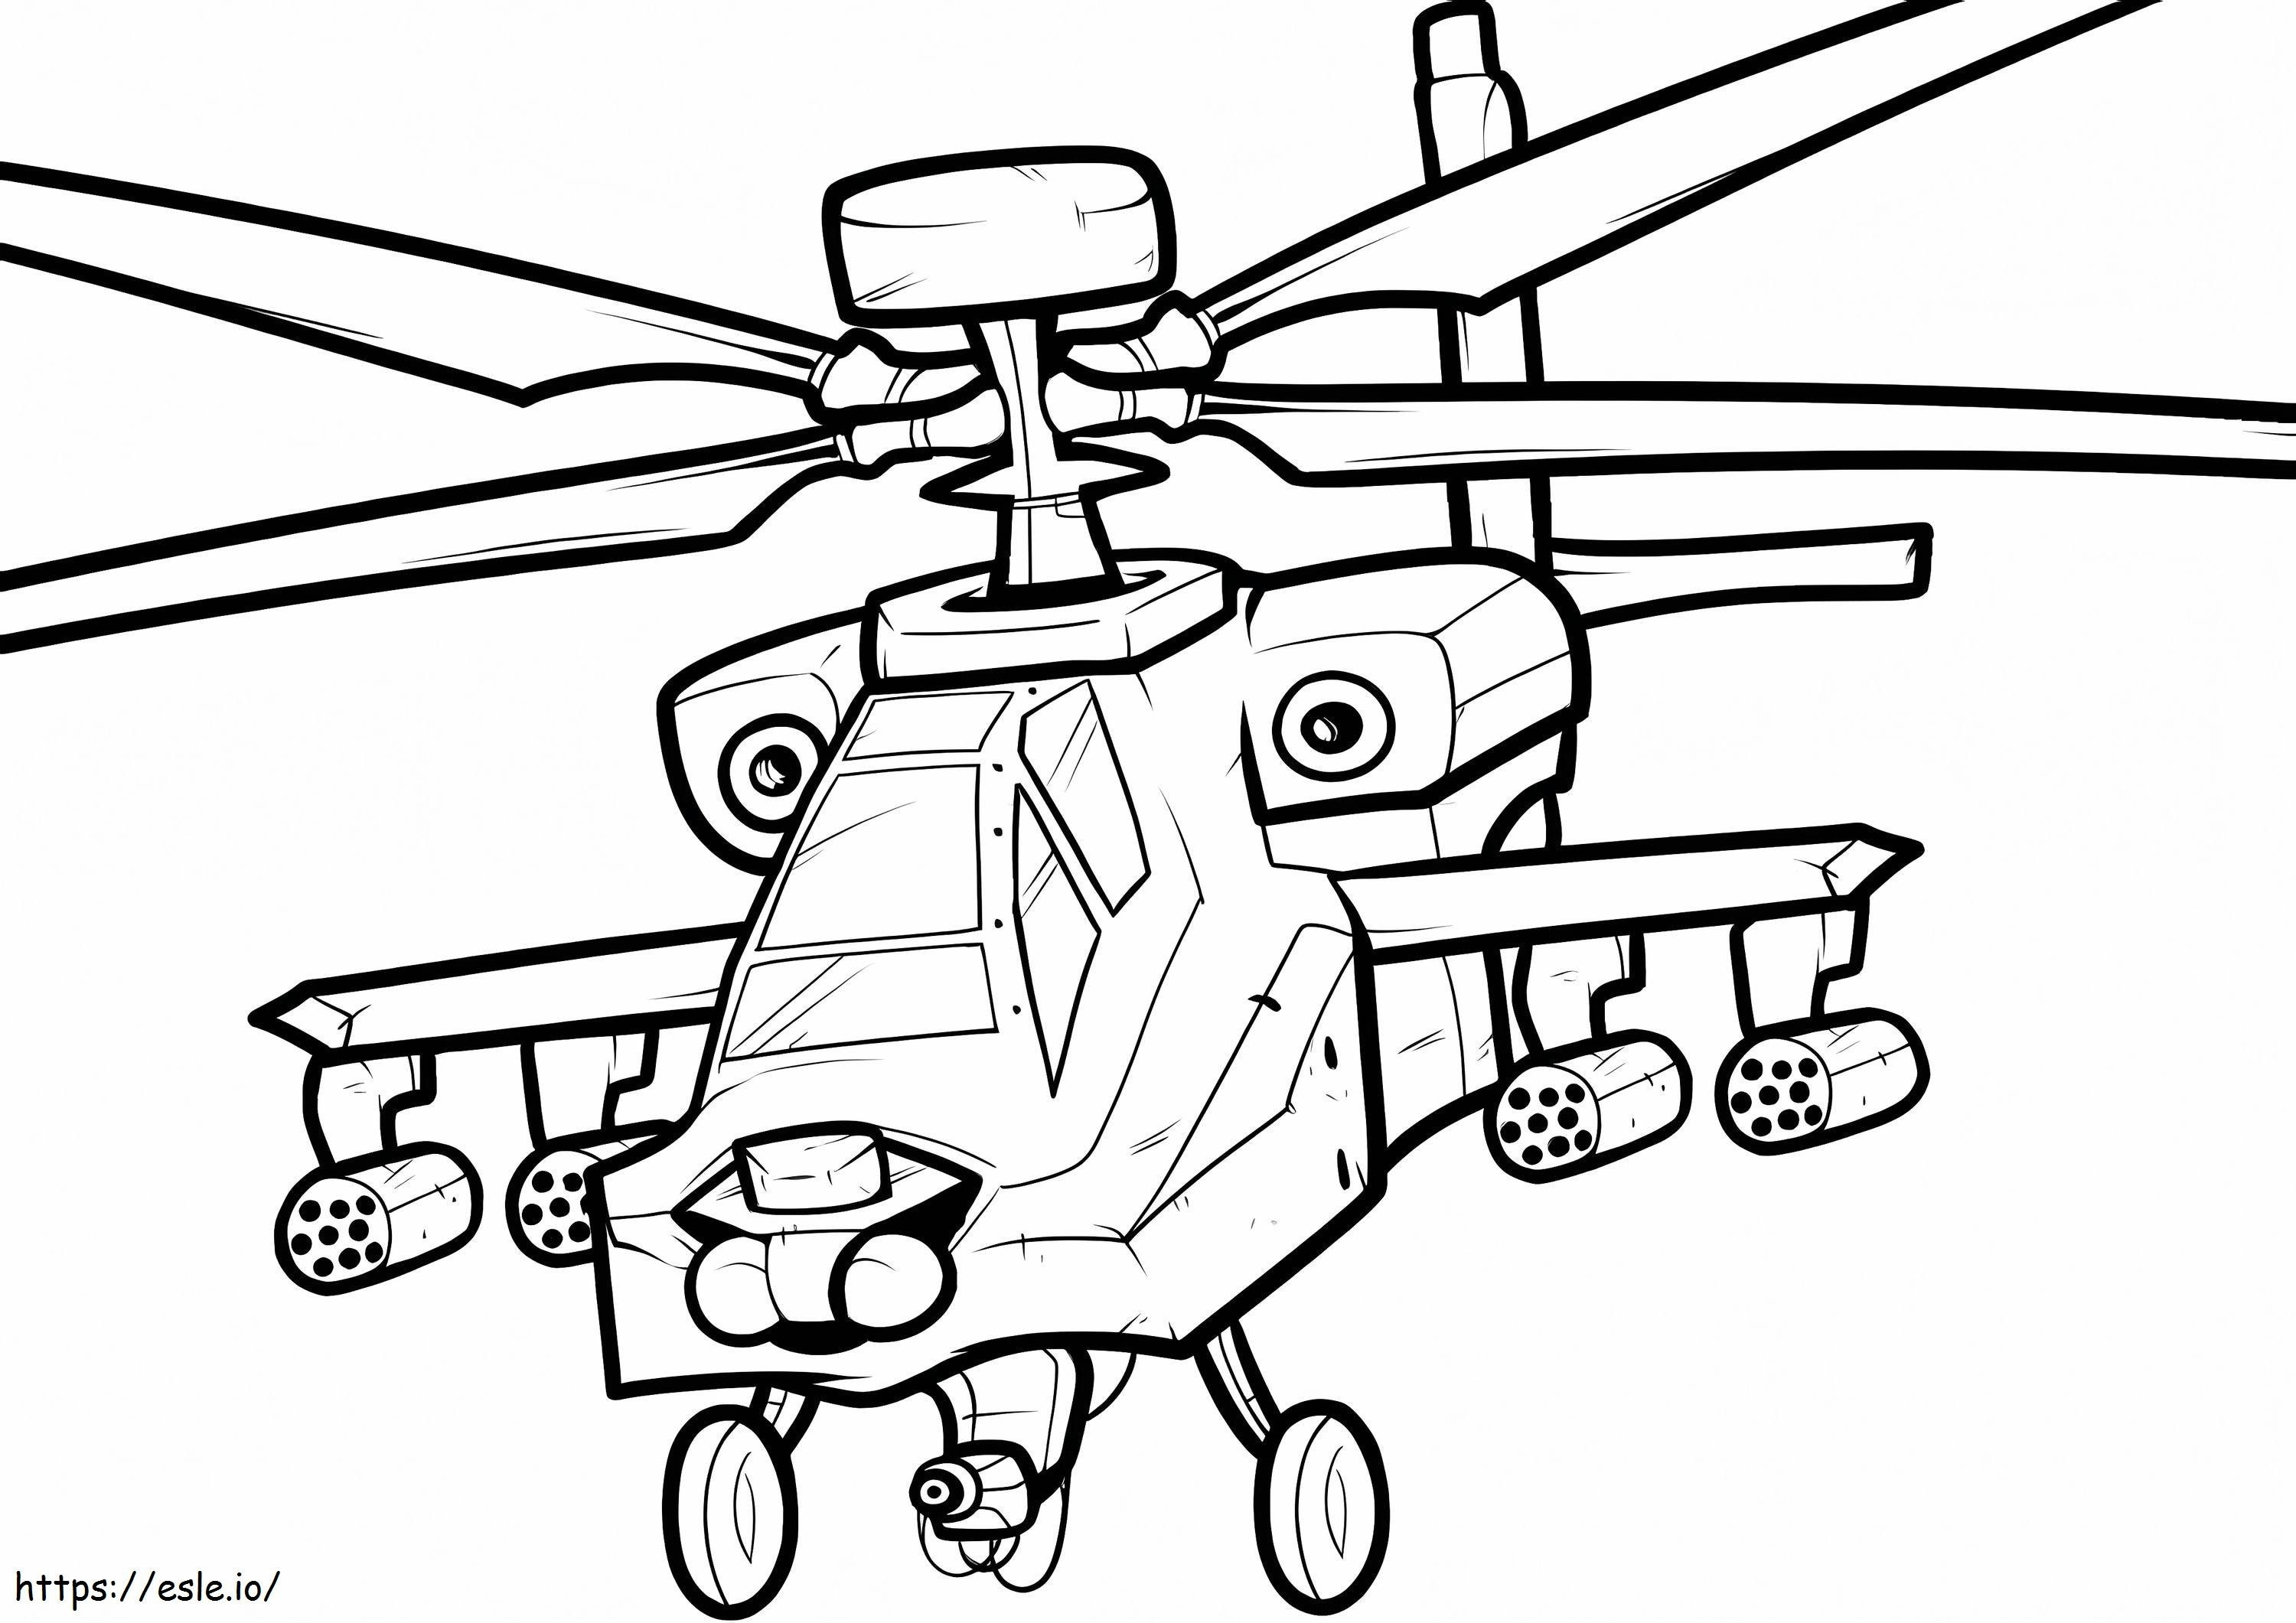 helicóptero de guerra para colorear